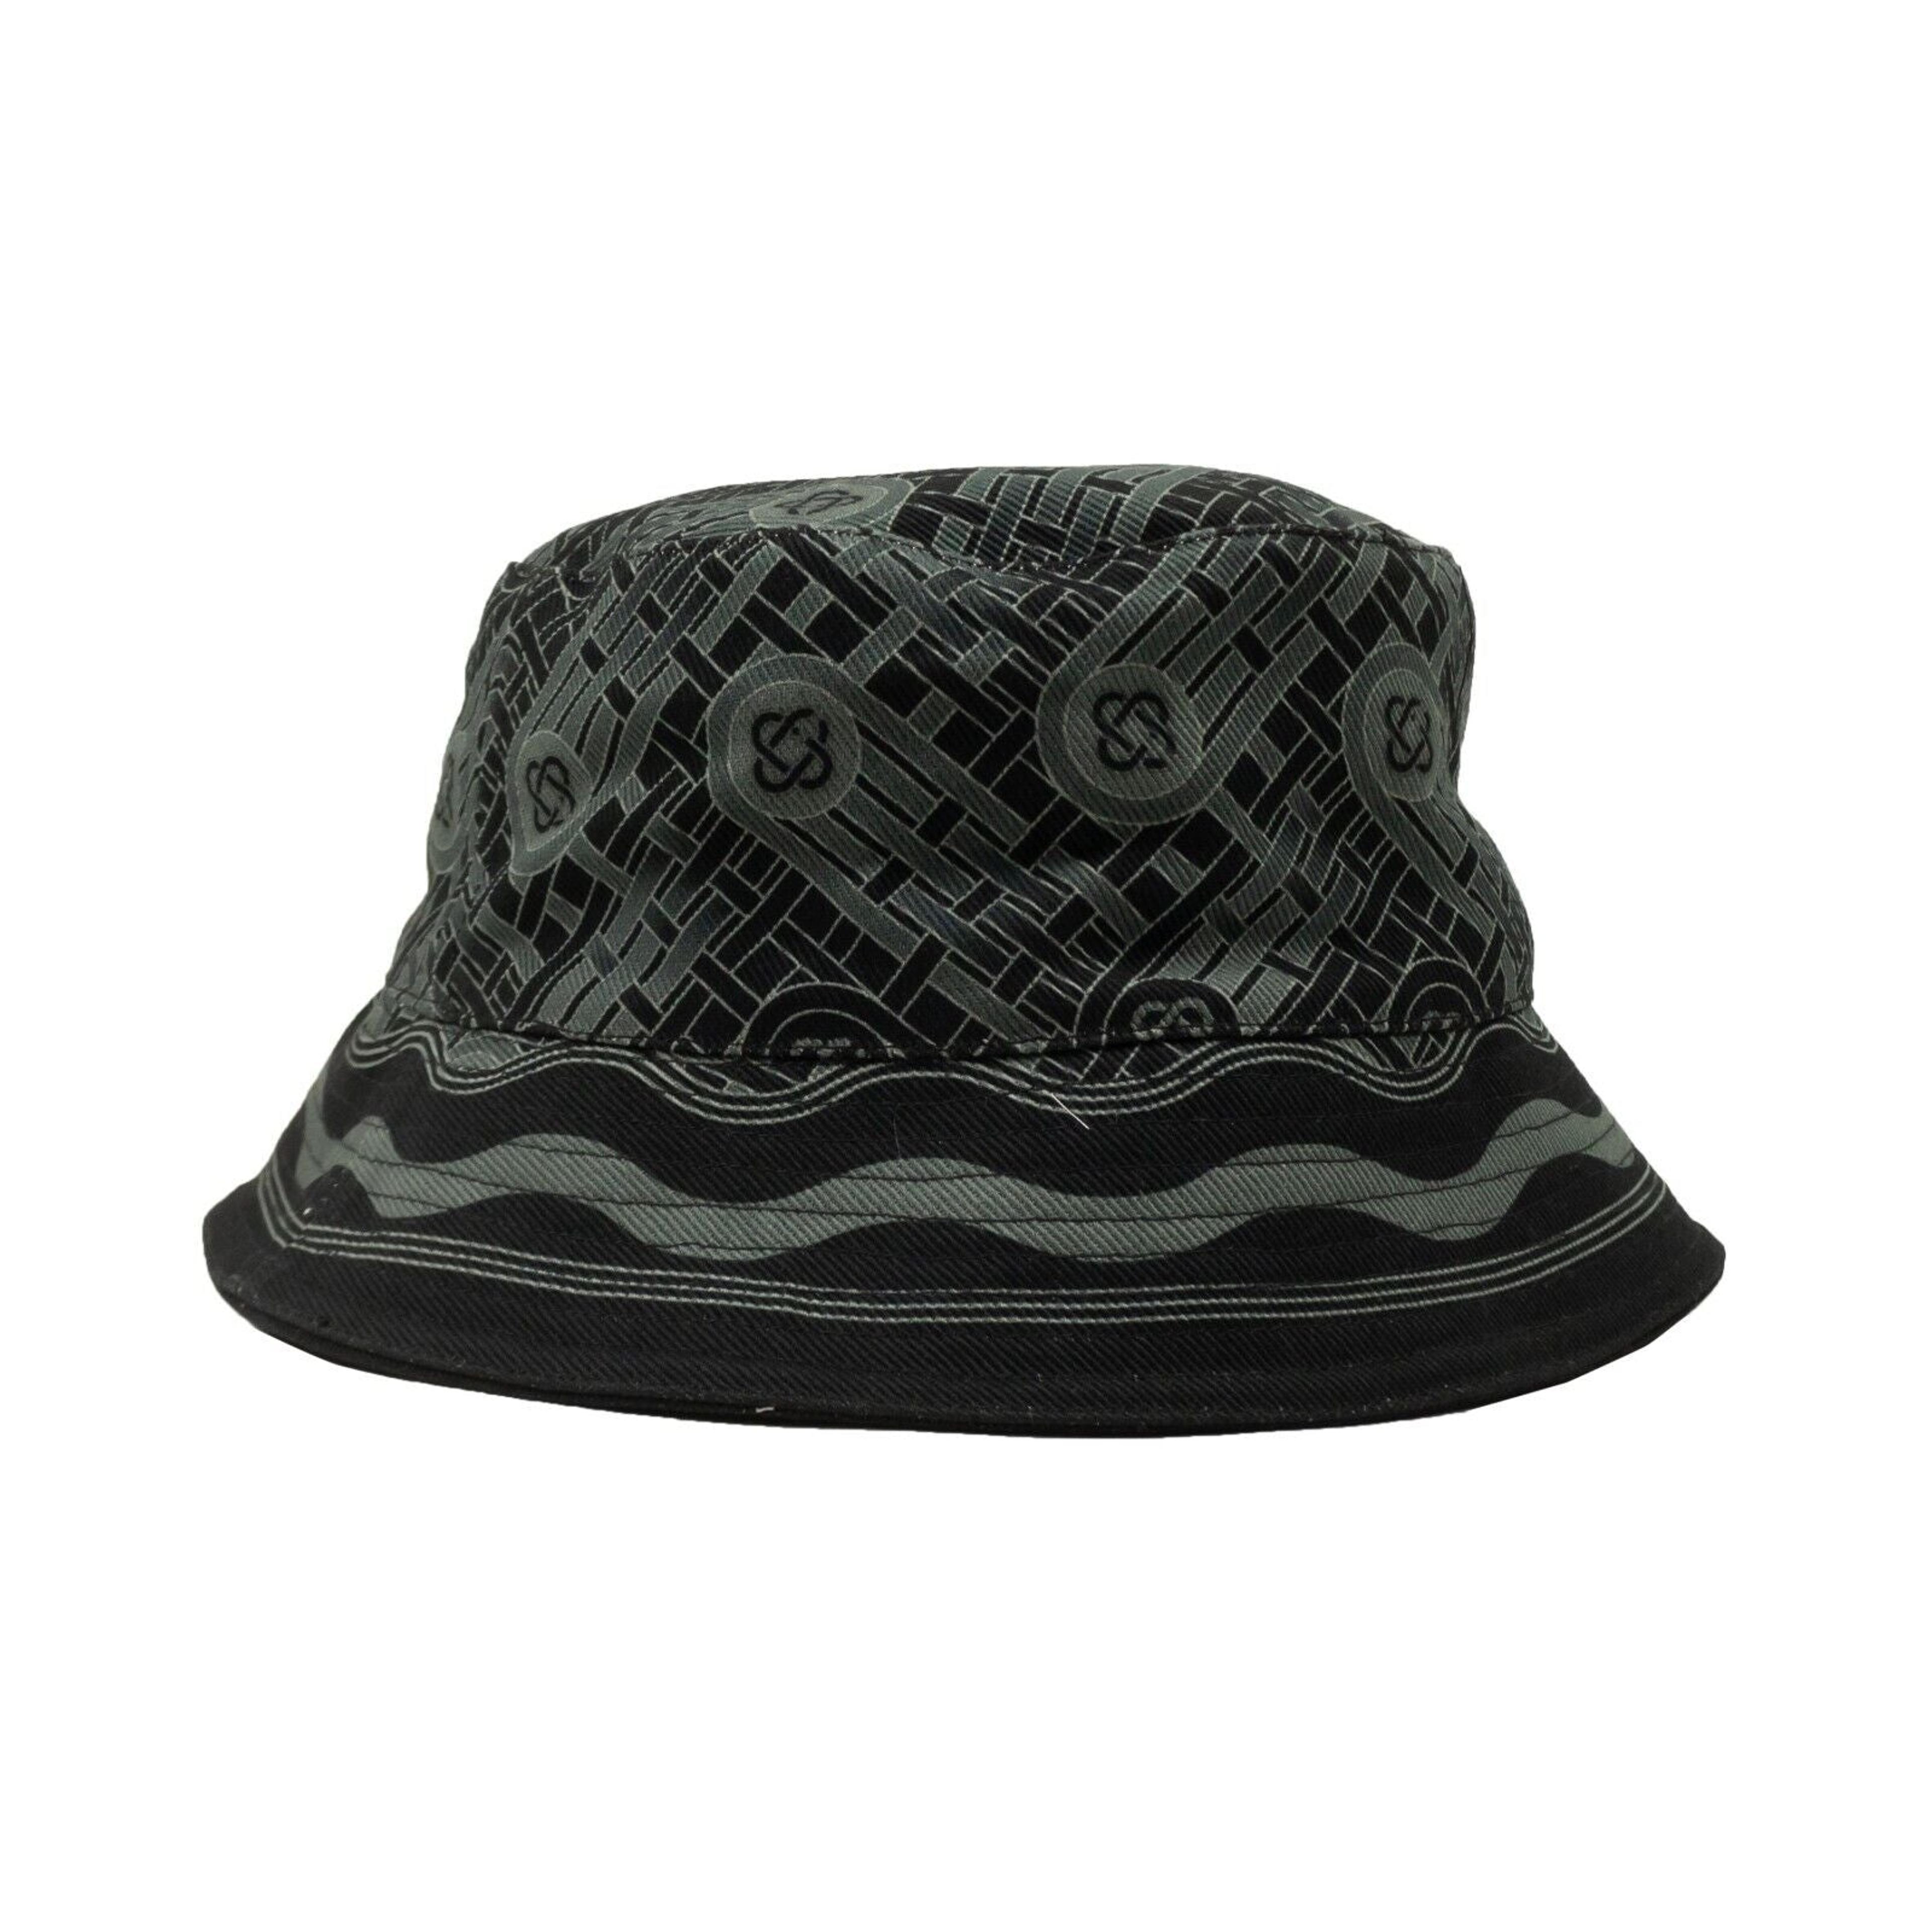 Alternate View 1 of Black And Grey Monogram Printed Bucket Hat